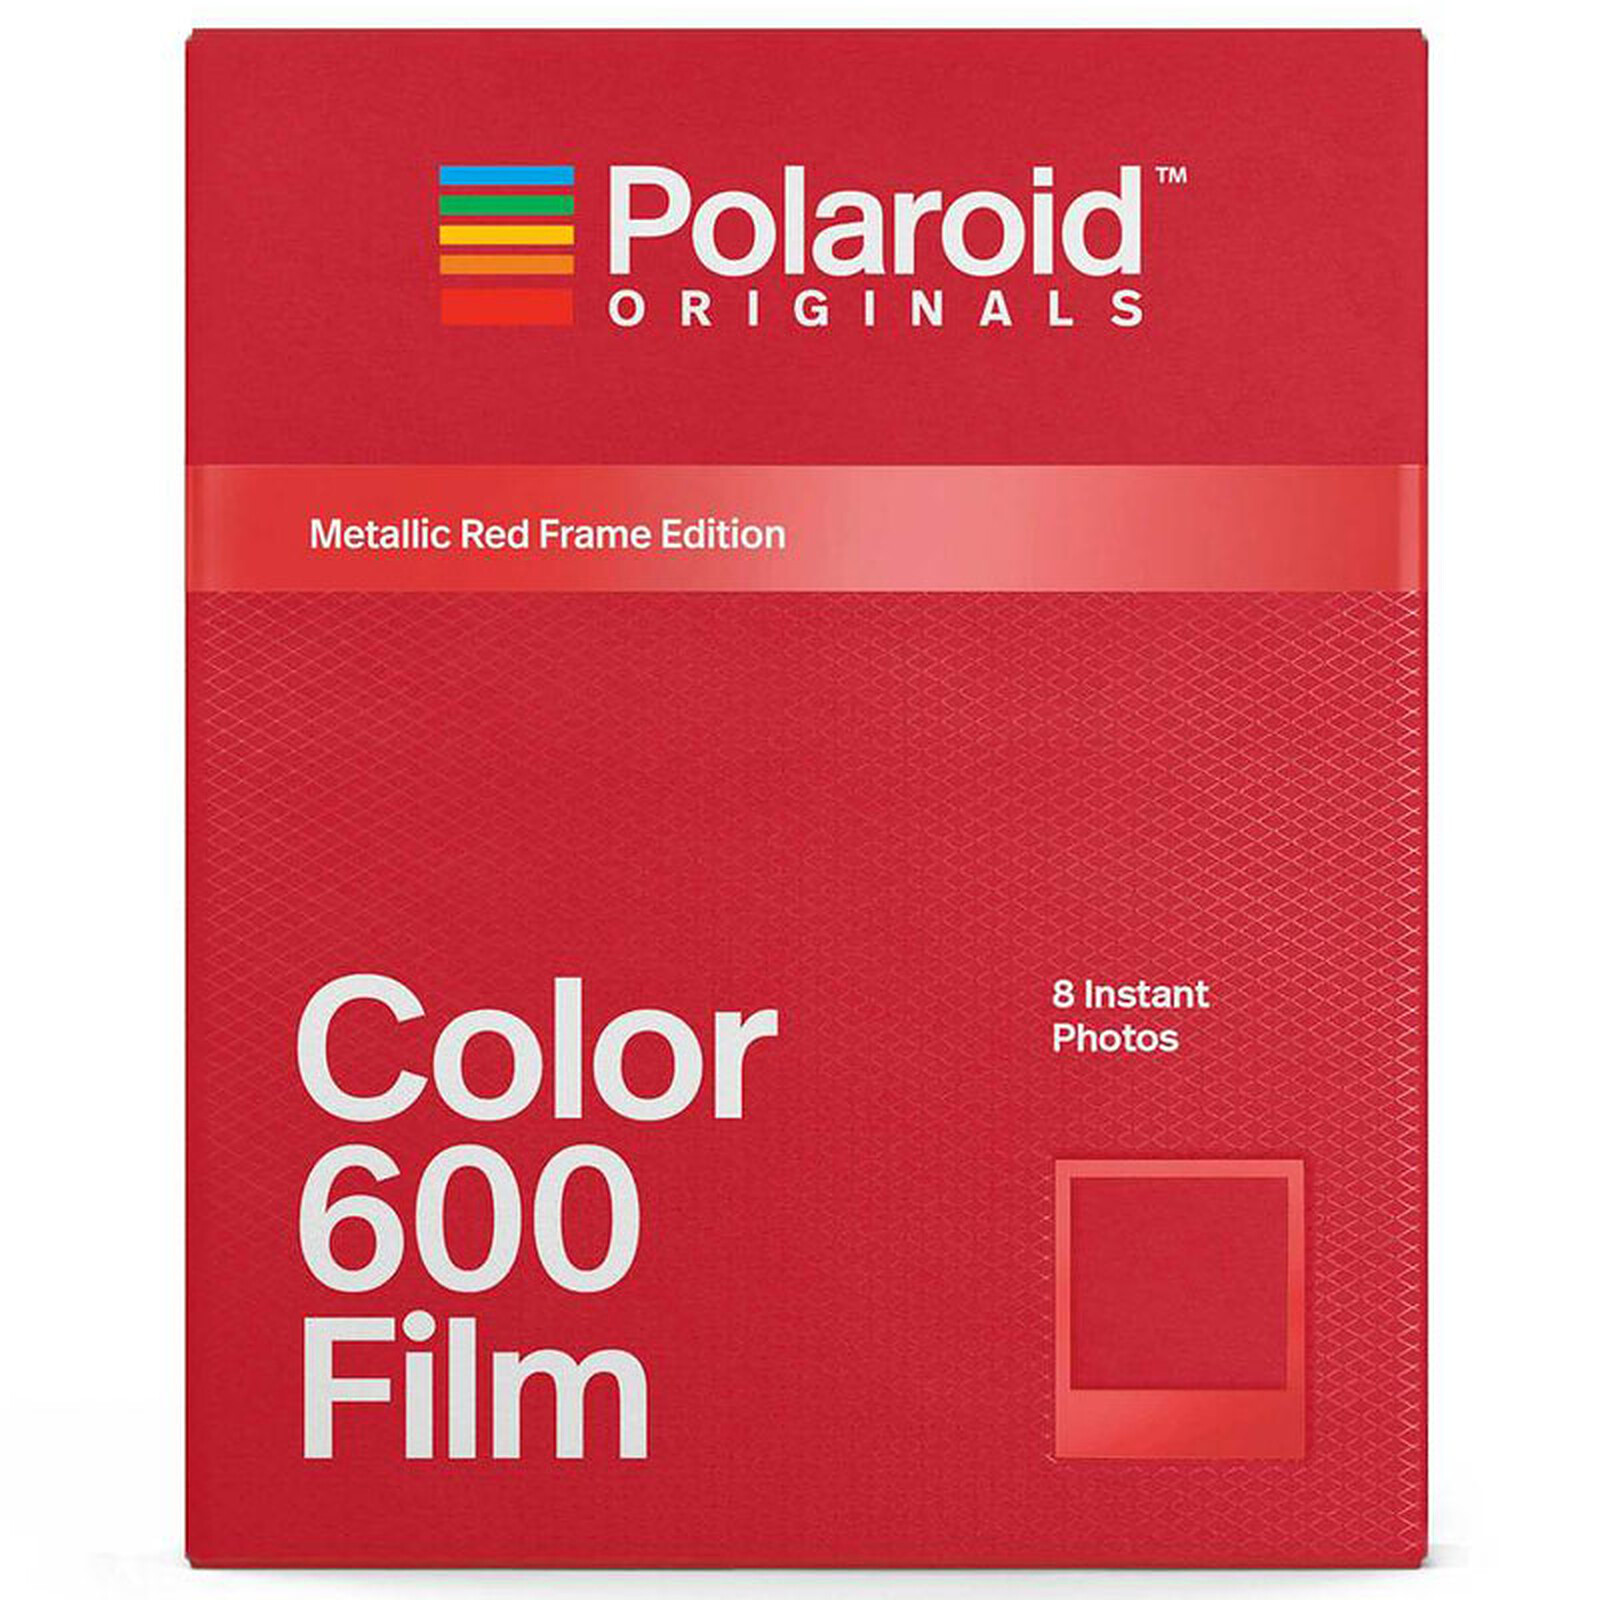 Polaroid Color 600 Film (cadre rouge) - Accessoires divers photo - Garantie  3 ans LDLC